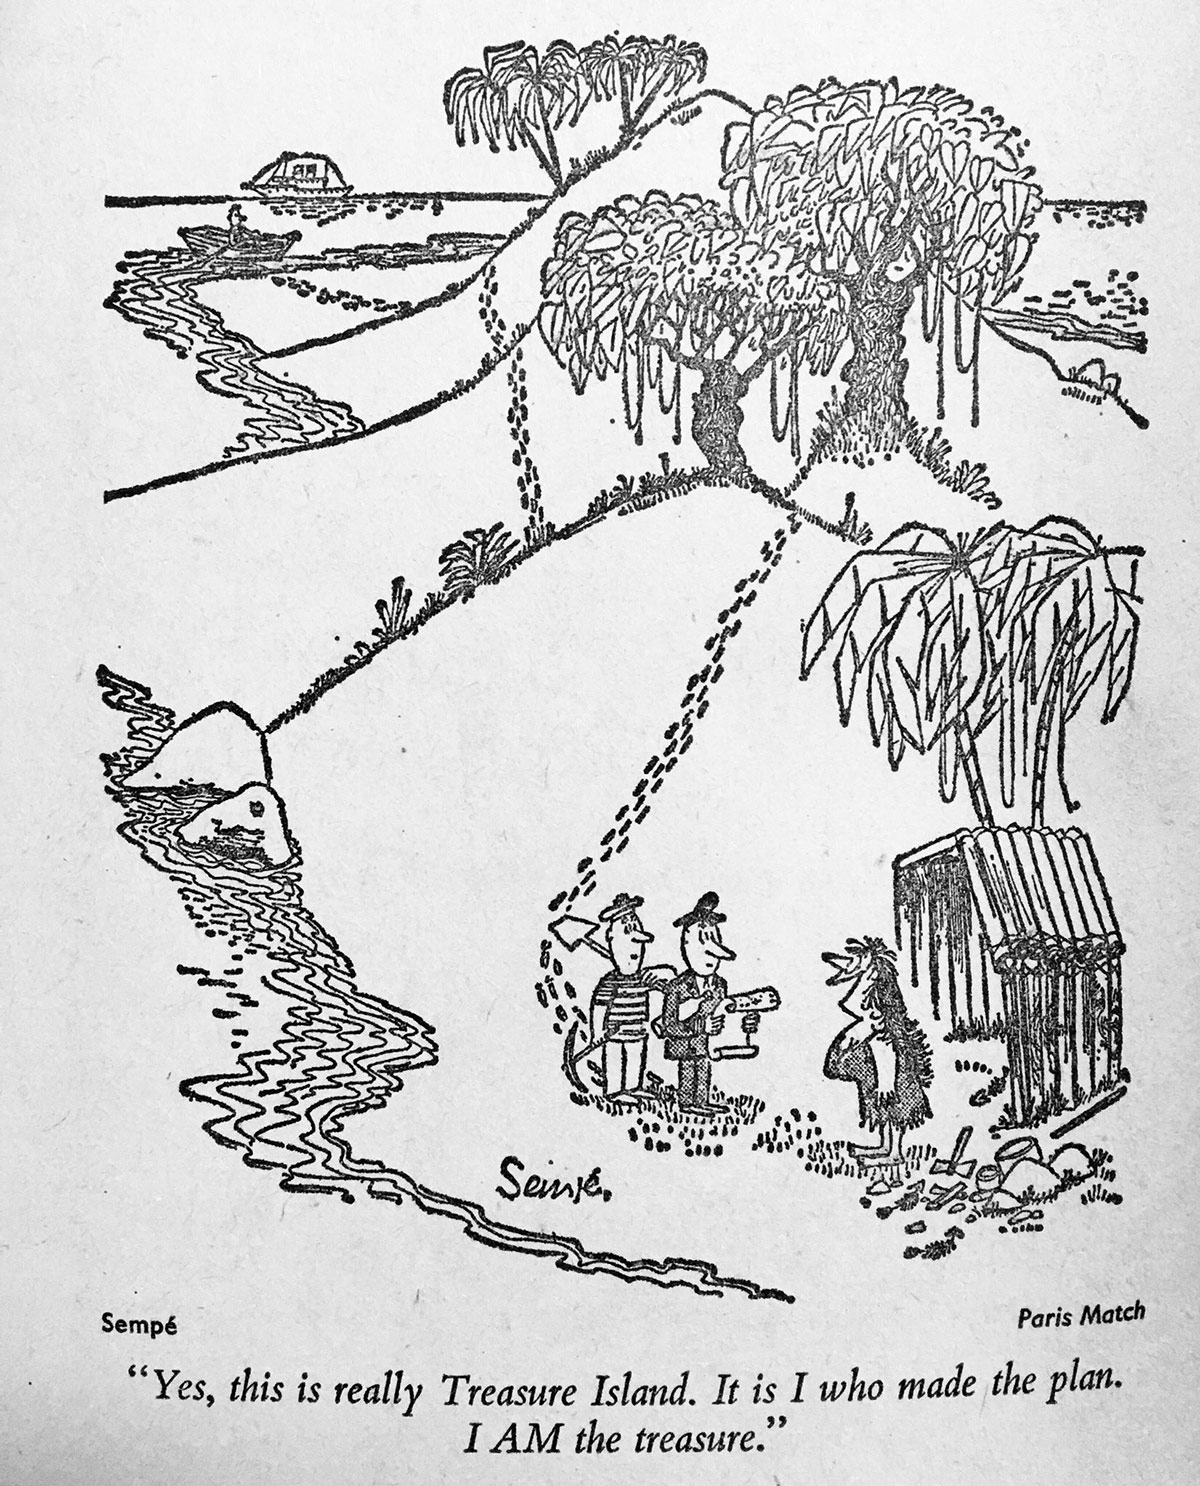 A 1950s cartoon by Sempé that appeared in <em>Paris Match.</em>